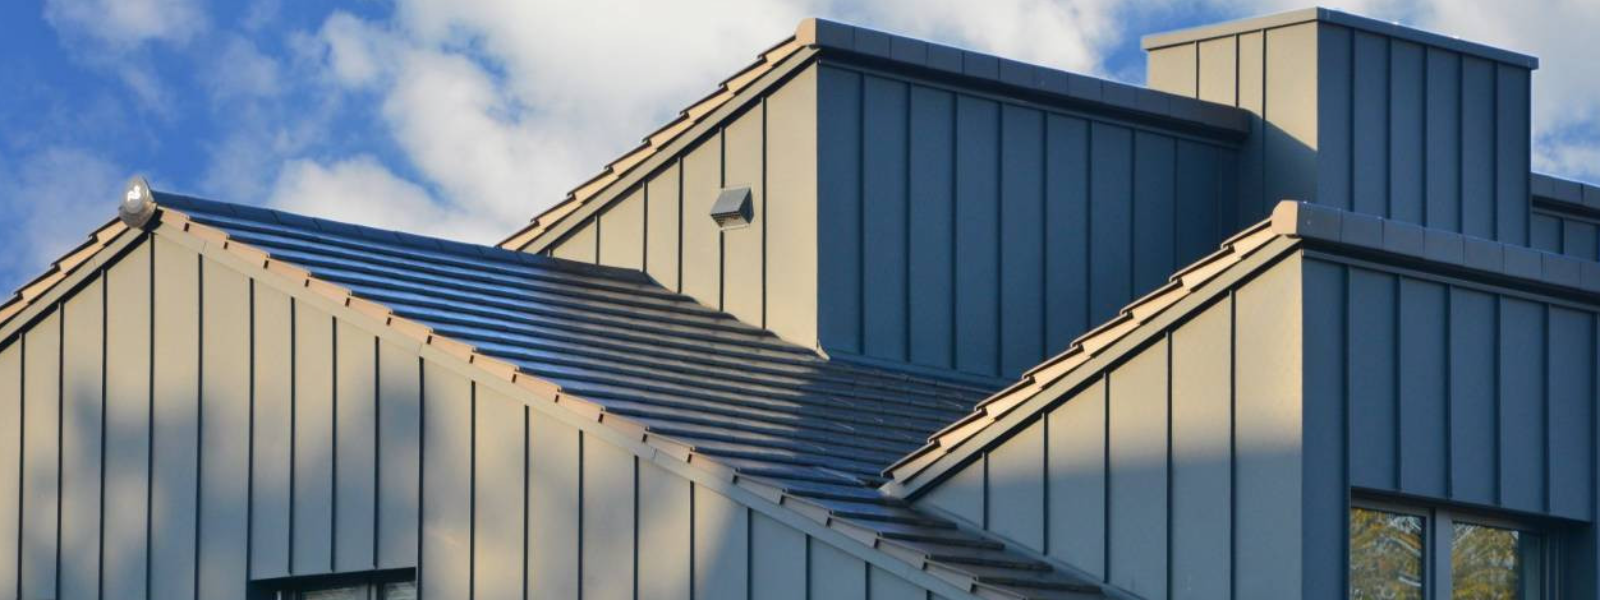 KL VALTSKATUS OÜ - Meie ettevõte tegeleb kõiksuguste katuse- ja fassaaditöödega alates planeerimisest kuni lõppviimi...